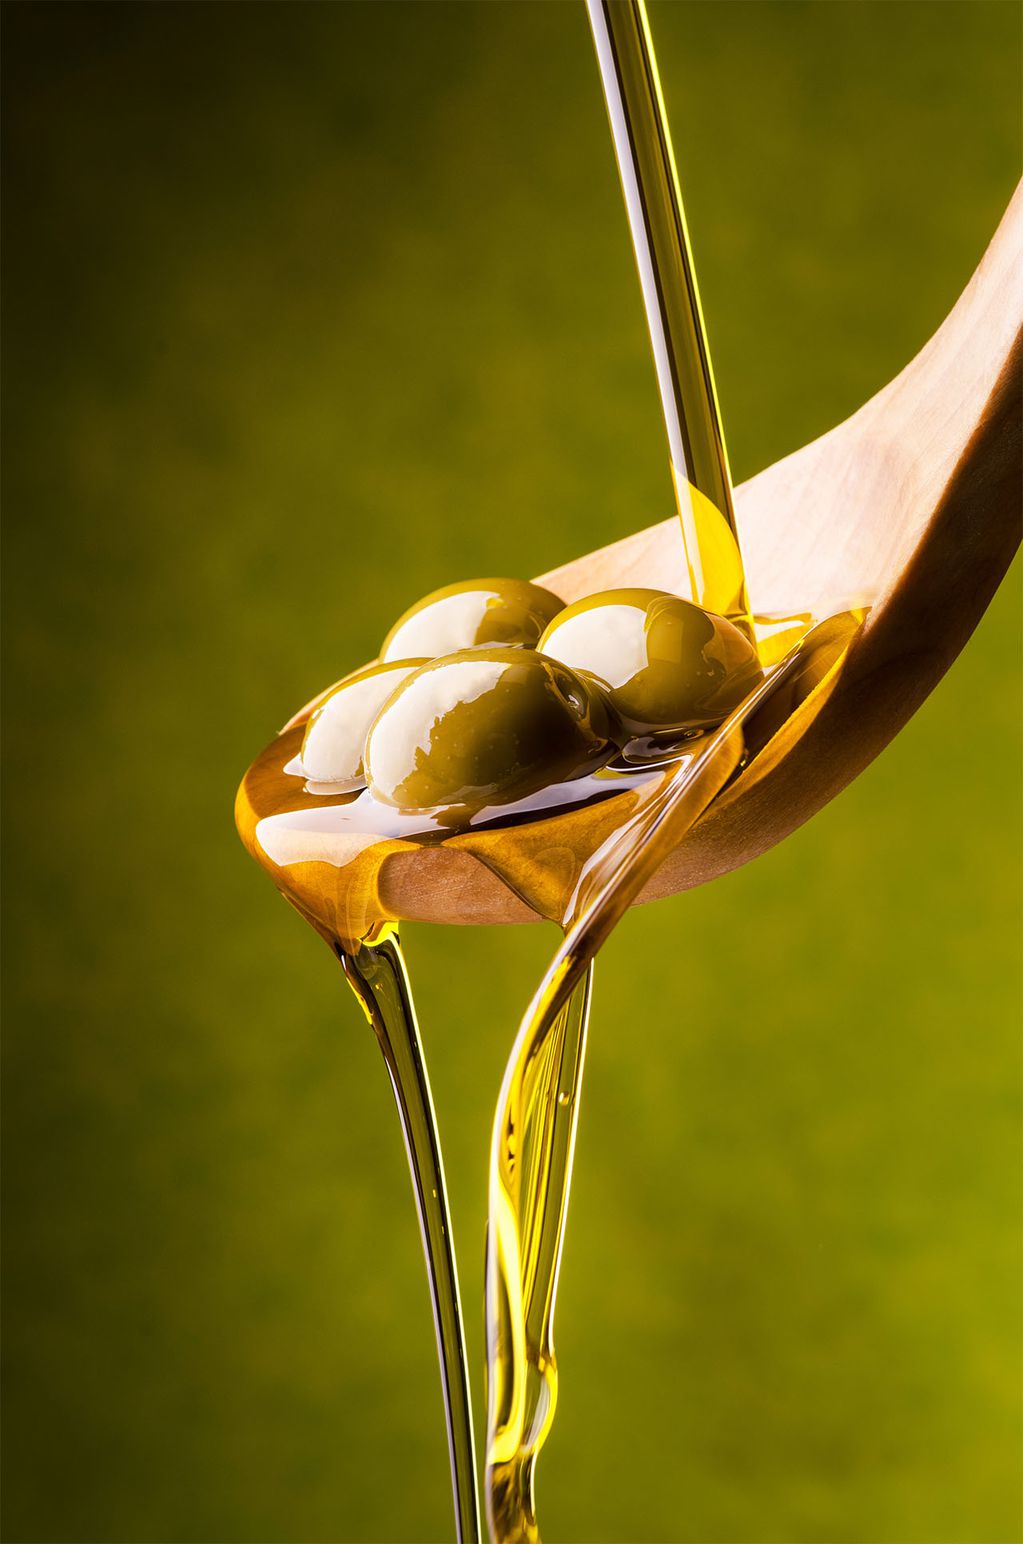 La ANMAT prohibió una miel y un aceite de oliva para preservar la salud de los consumidores.